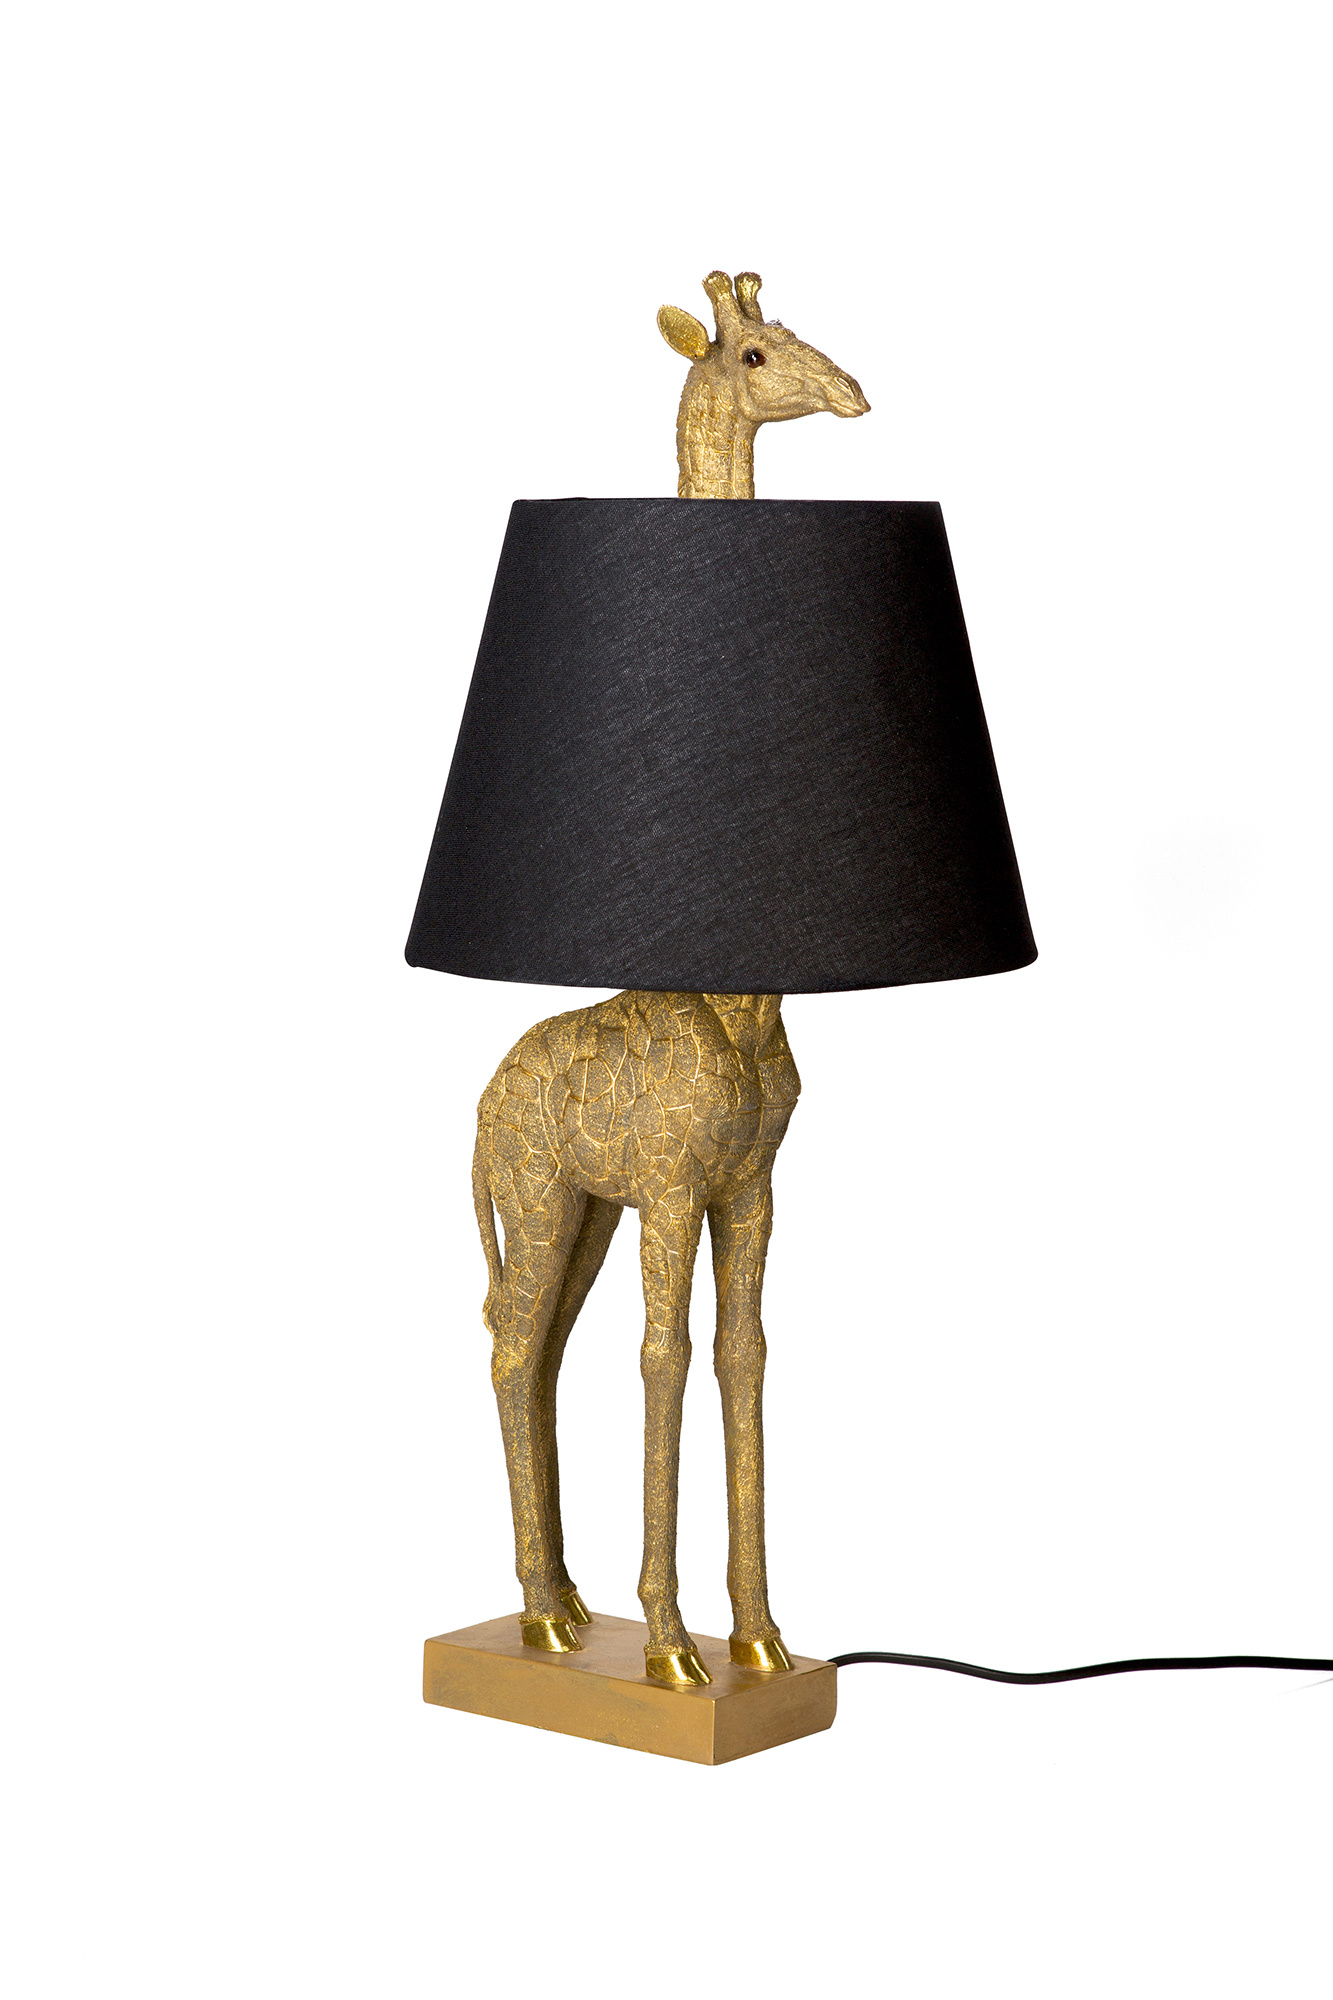 PAS OP............. niets ontgaat deze langnek!  Giraffe lamp met zwarte kap.